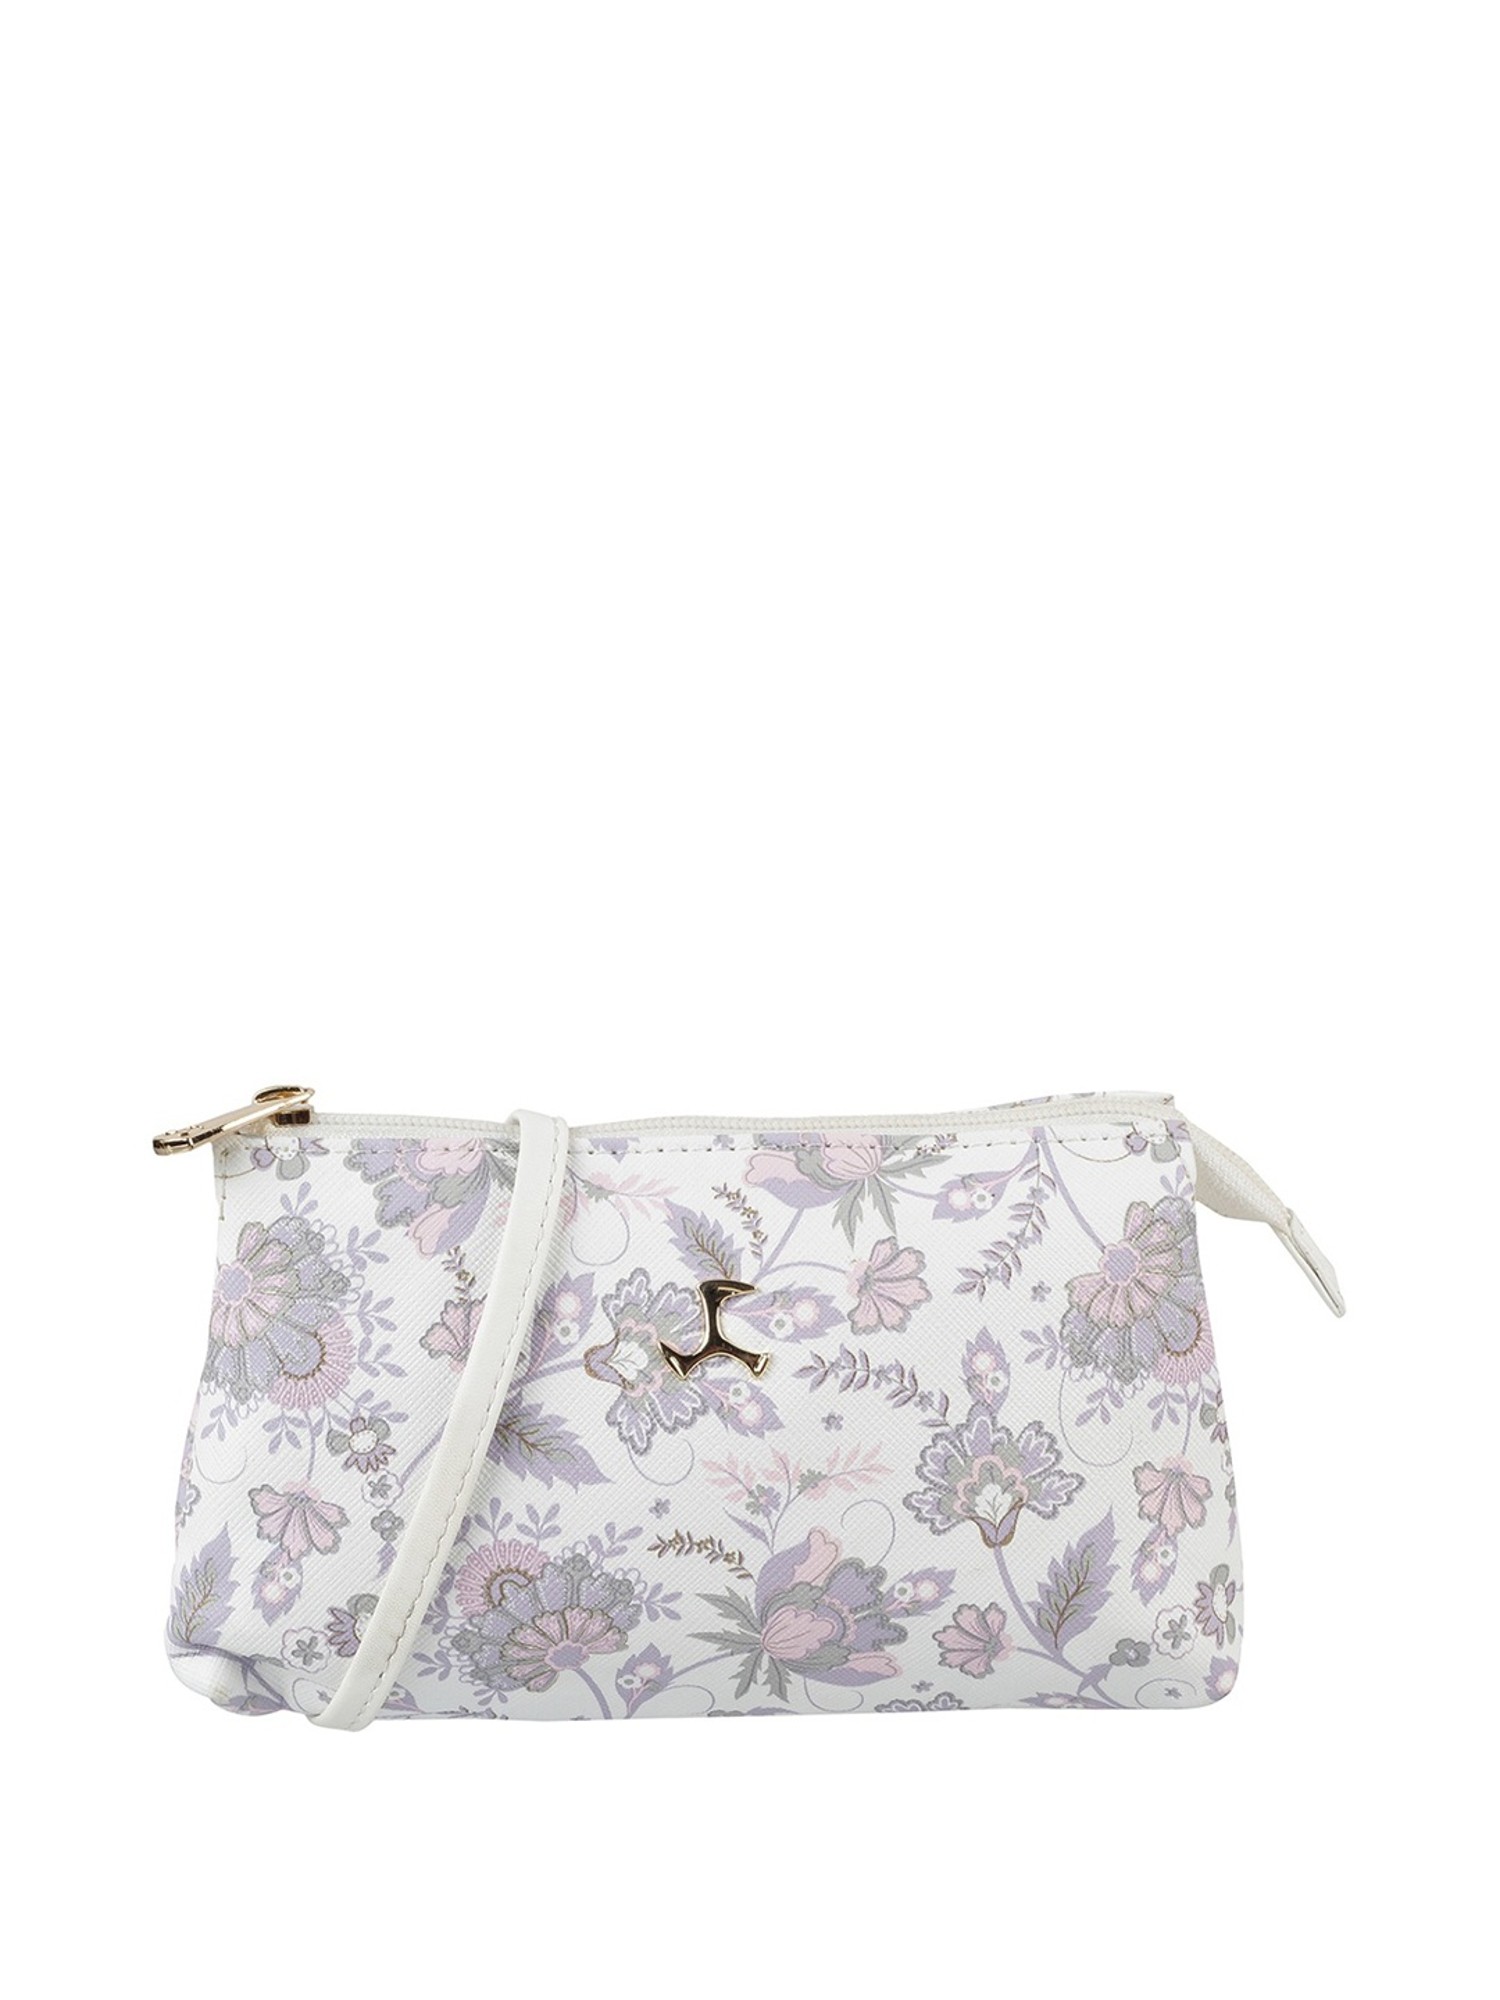 Mochi Handbags : Buy Mochi Maroon Gold Embroidered Handbag Online| Nykaa  Fashion.